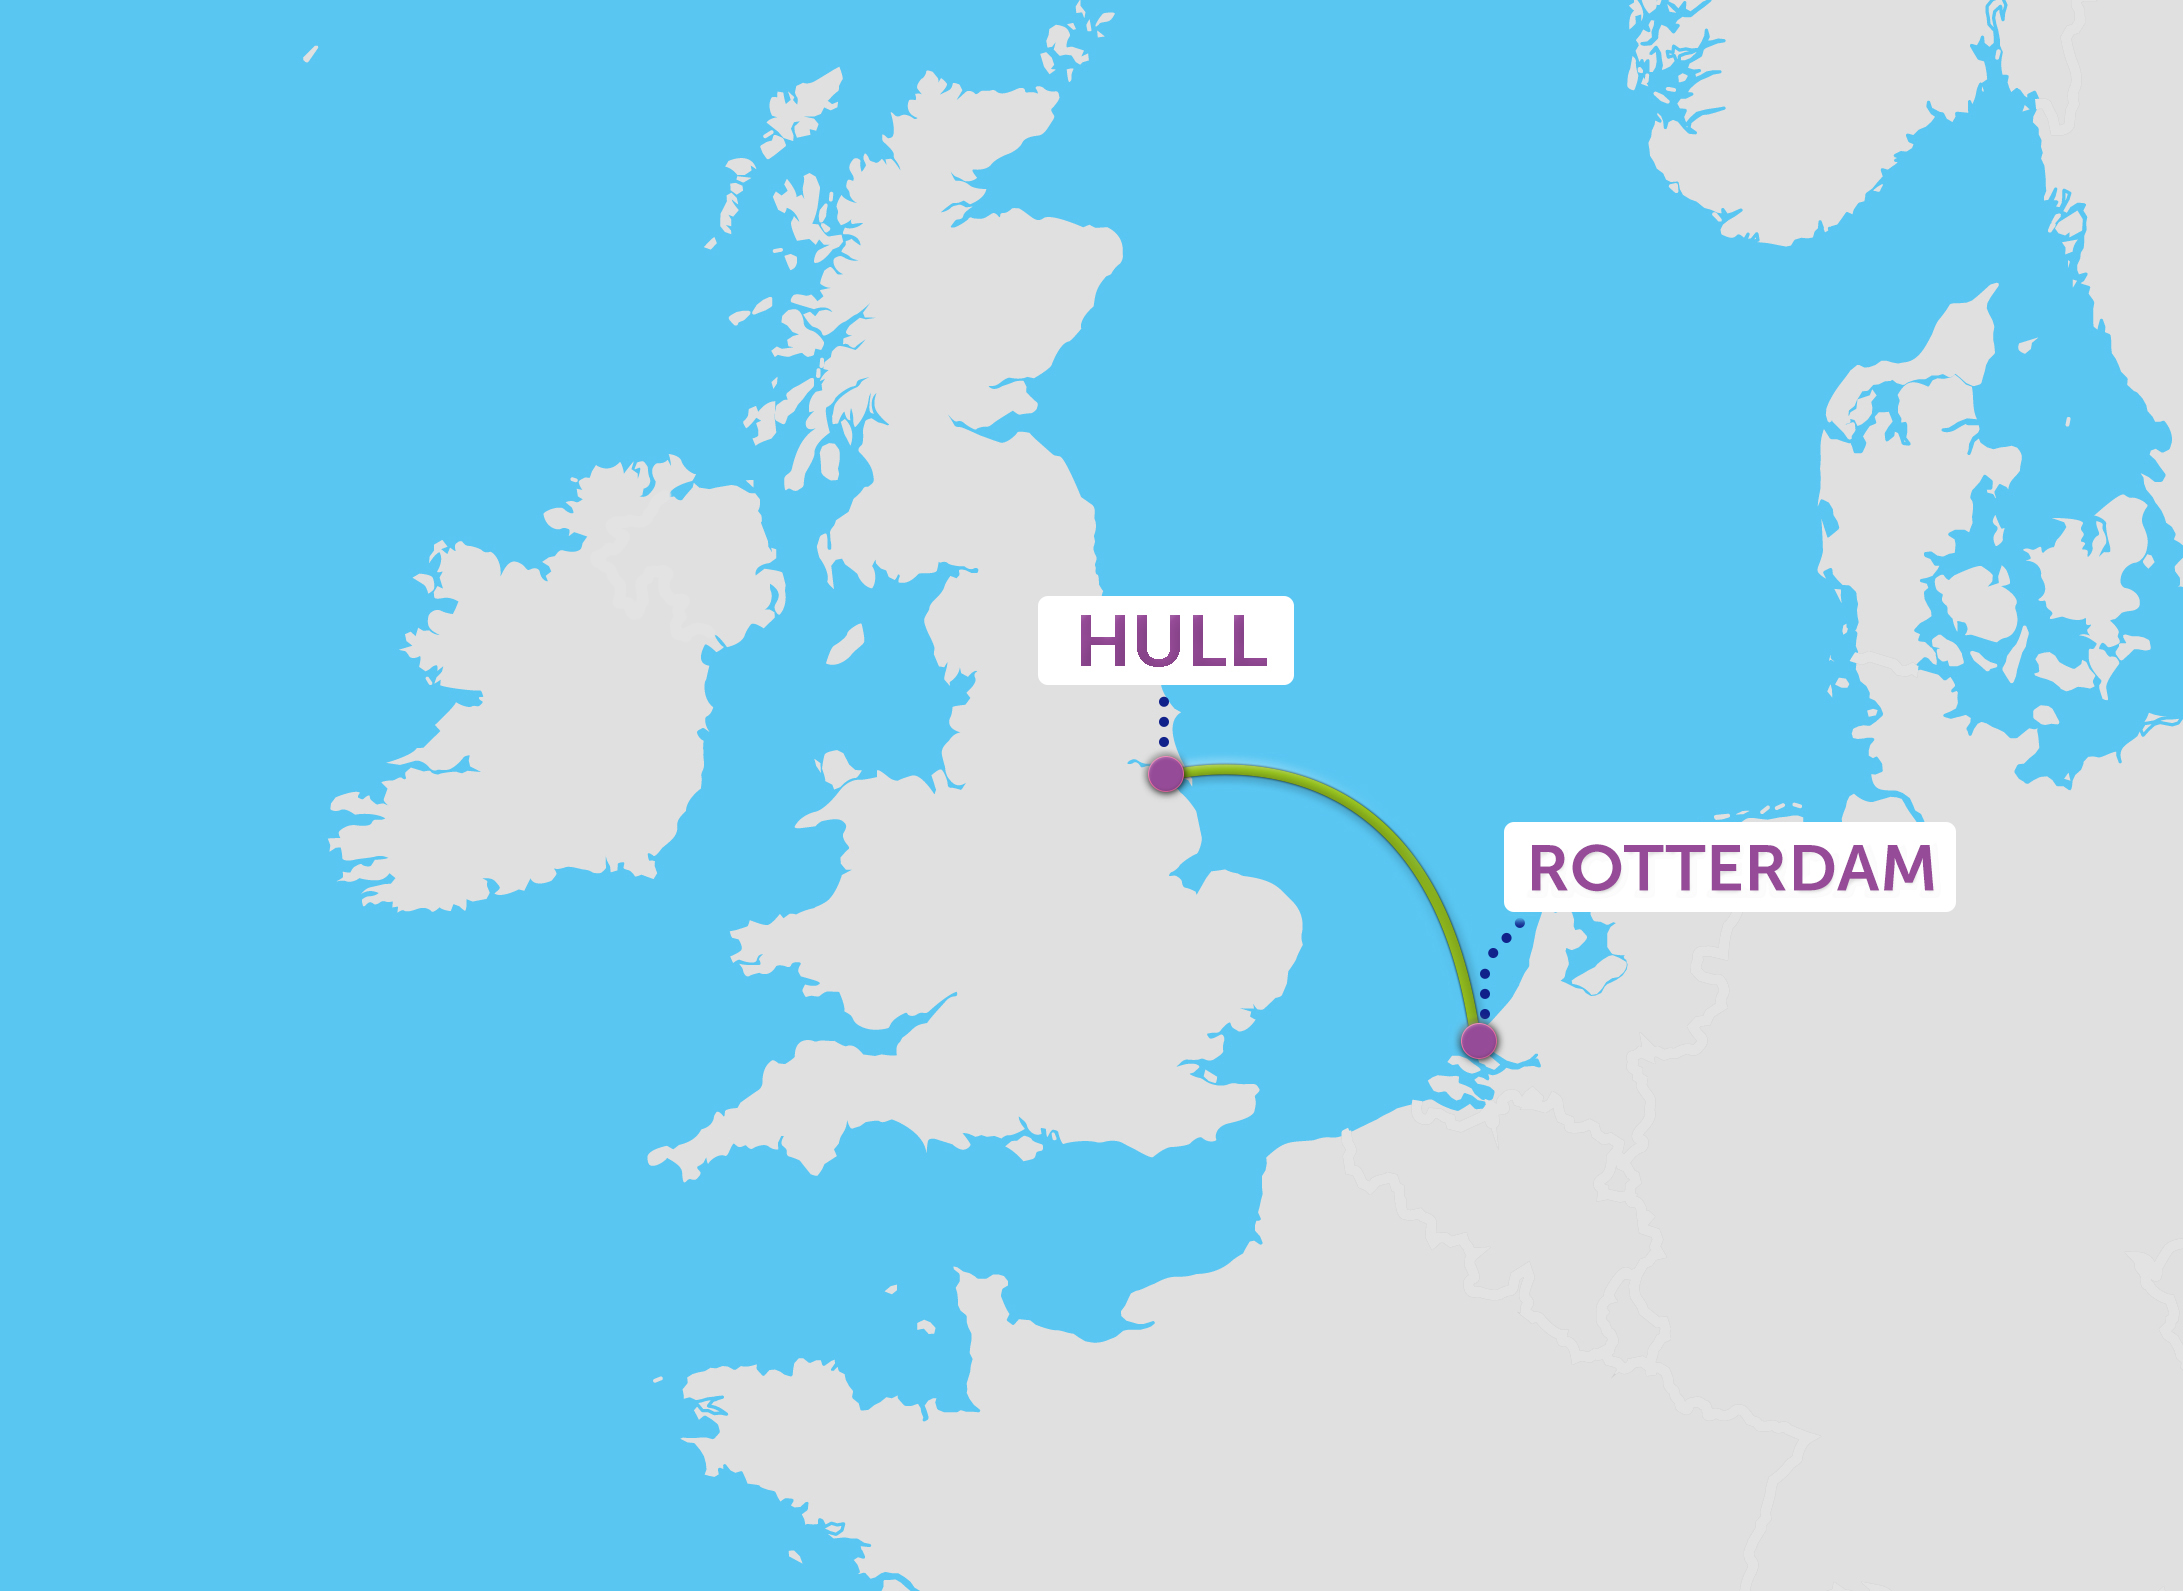 Veerboten tussen Rotterdam en Hull. Neem een P&O Veerdienst - Amsterdam naar Engeland makkelijker gemaakt.